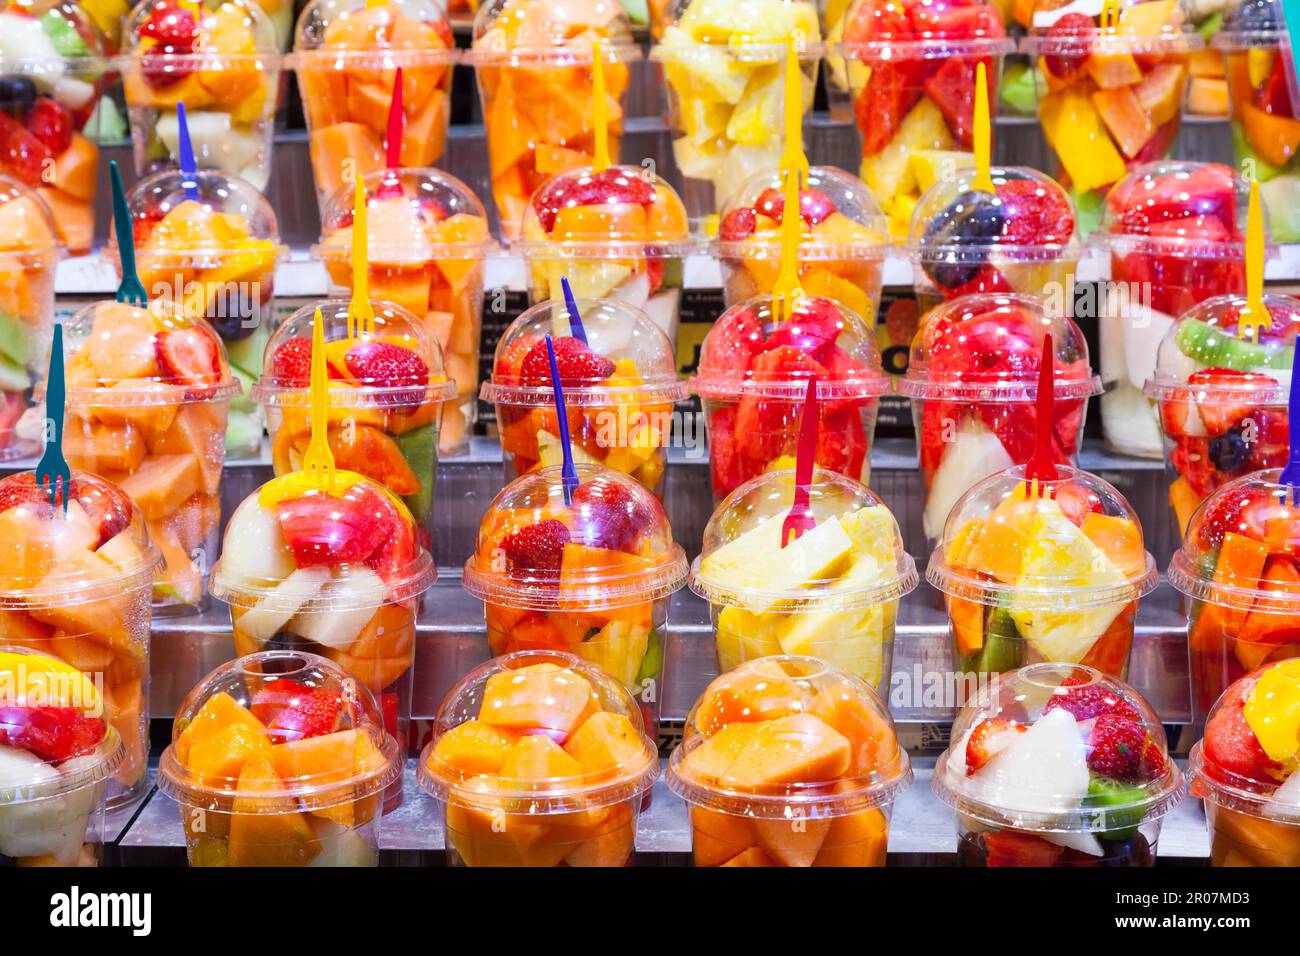 Foto a colori in questo dettaglio di macedonie di frutta esposta in un mercato spagnolo Foto Stock